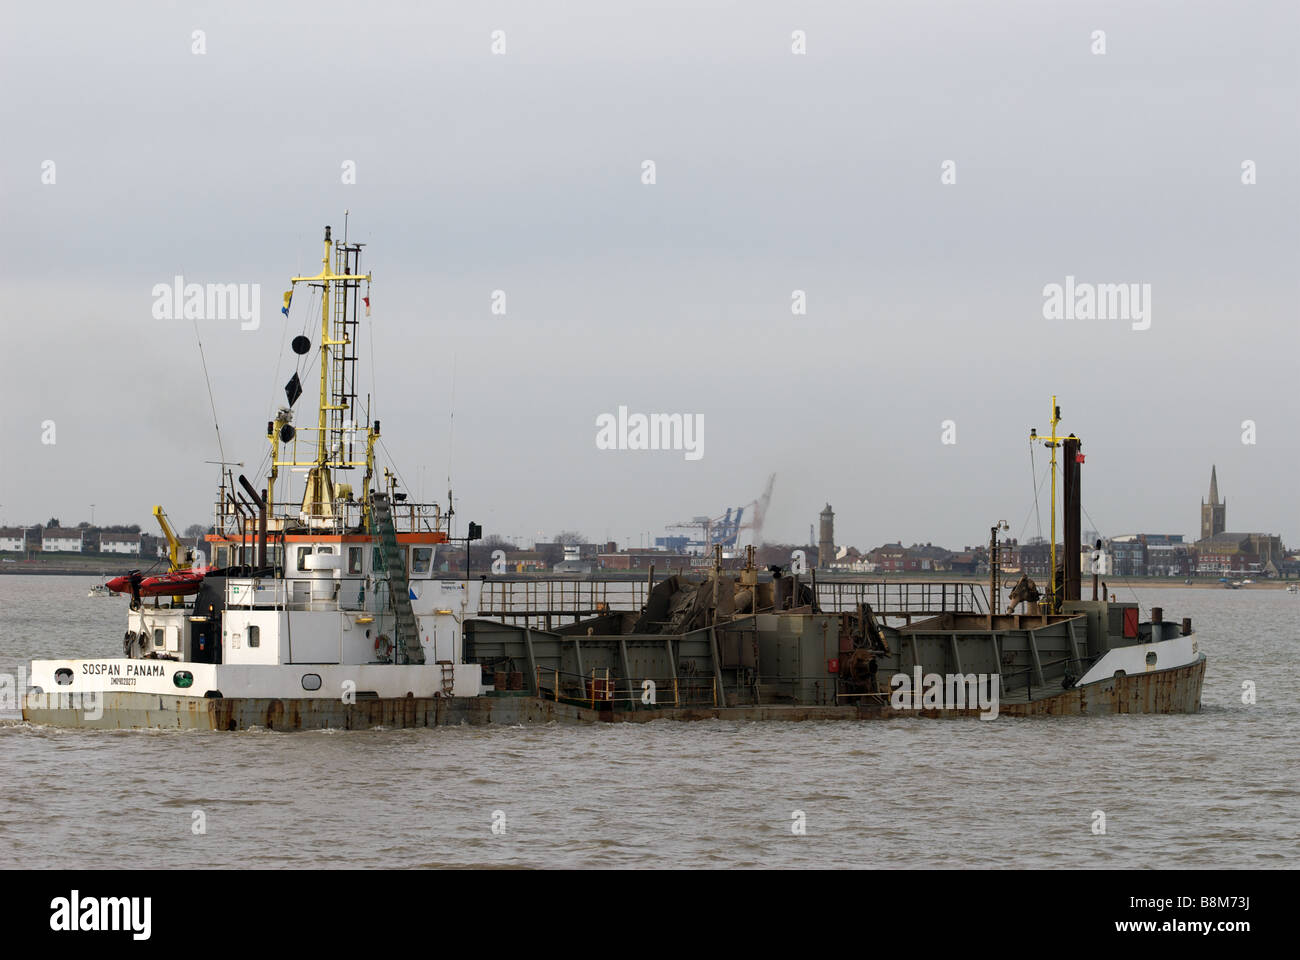 Draga de dragado del canal de aguas profundas, en el puerto de Felixstowe, Reino Unido. Foto de stock